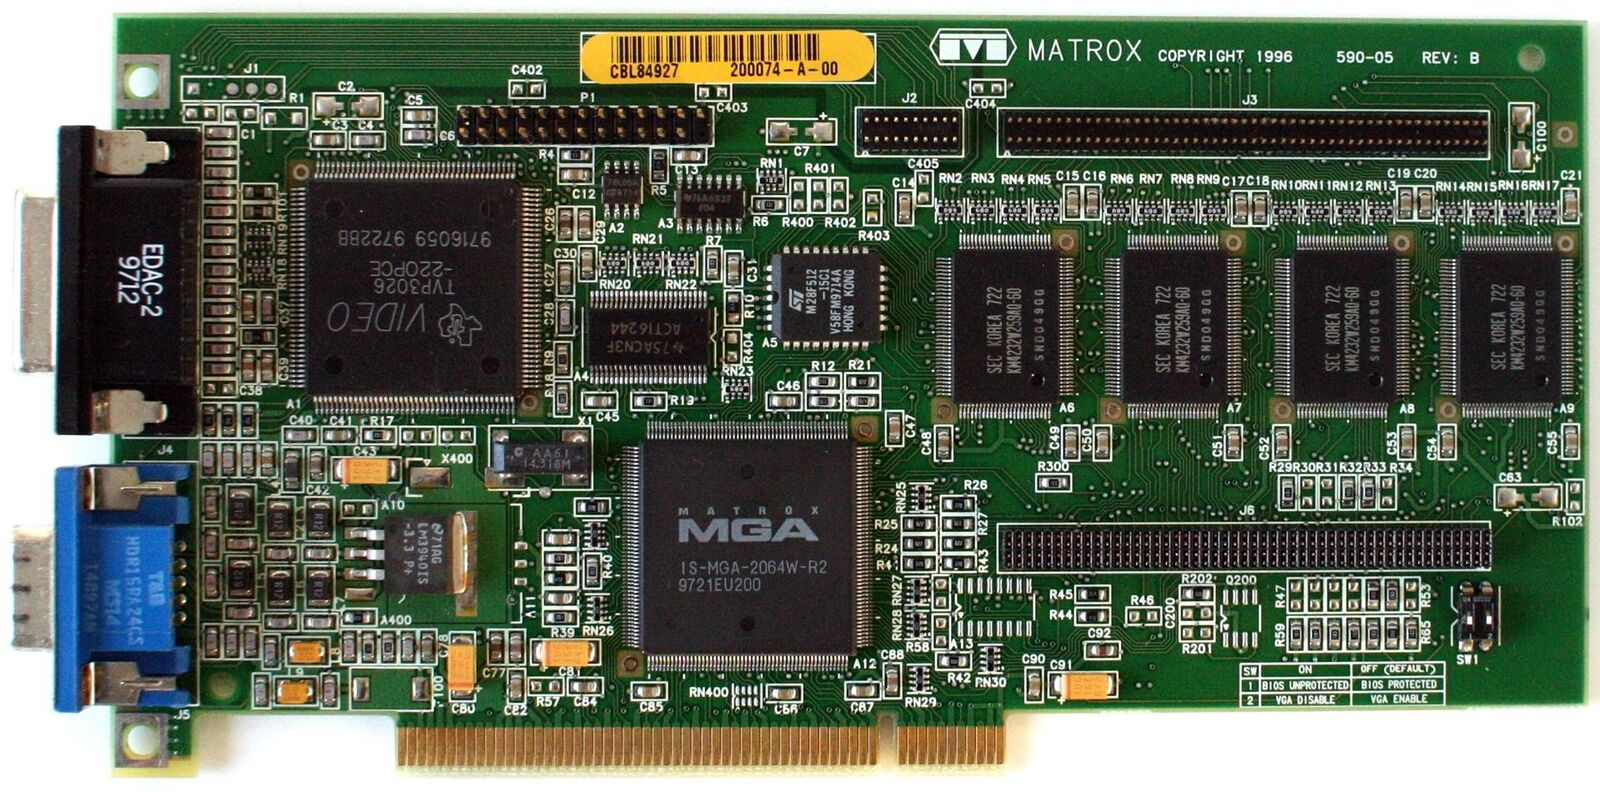 MATROX 590-05 REV.B 4MB PCI VIDEO CARD, FCC ID: ID7059000, MGA-MIL/4/IB3, IBM...